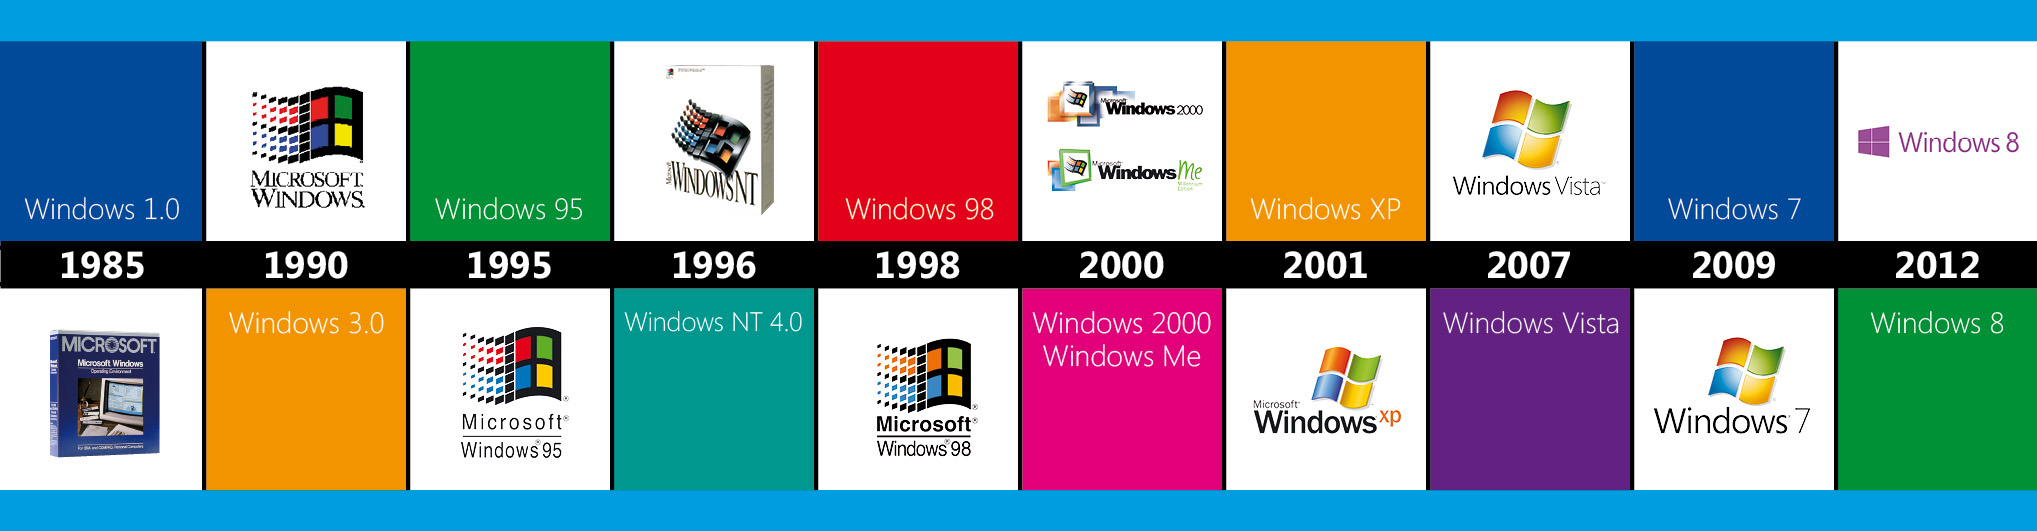 Рейтинг операционных систем, или почему я выбираю windows